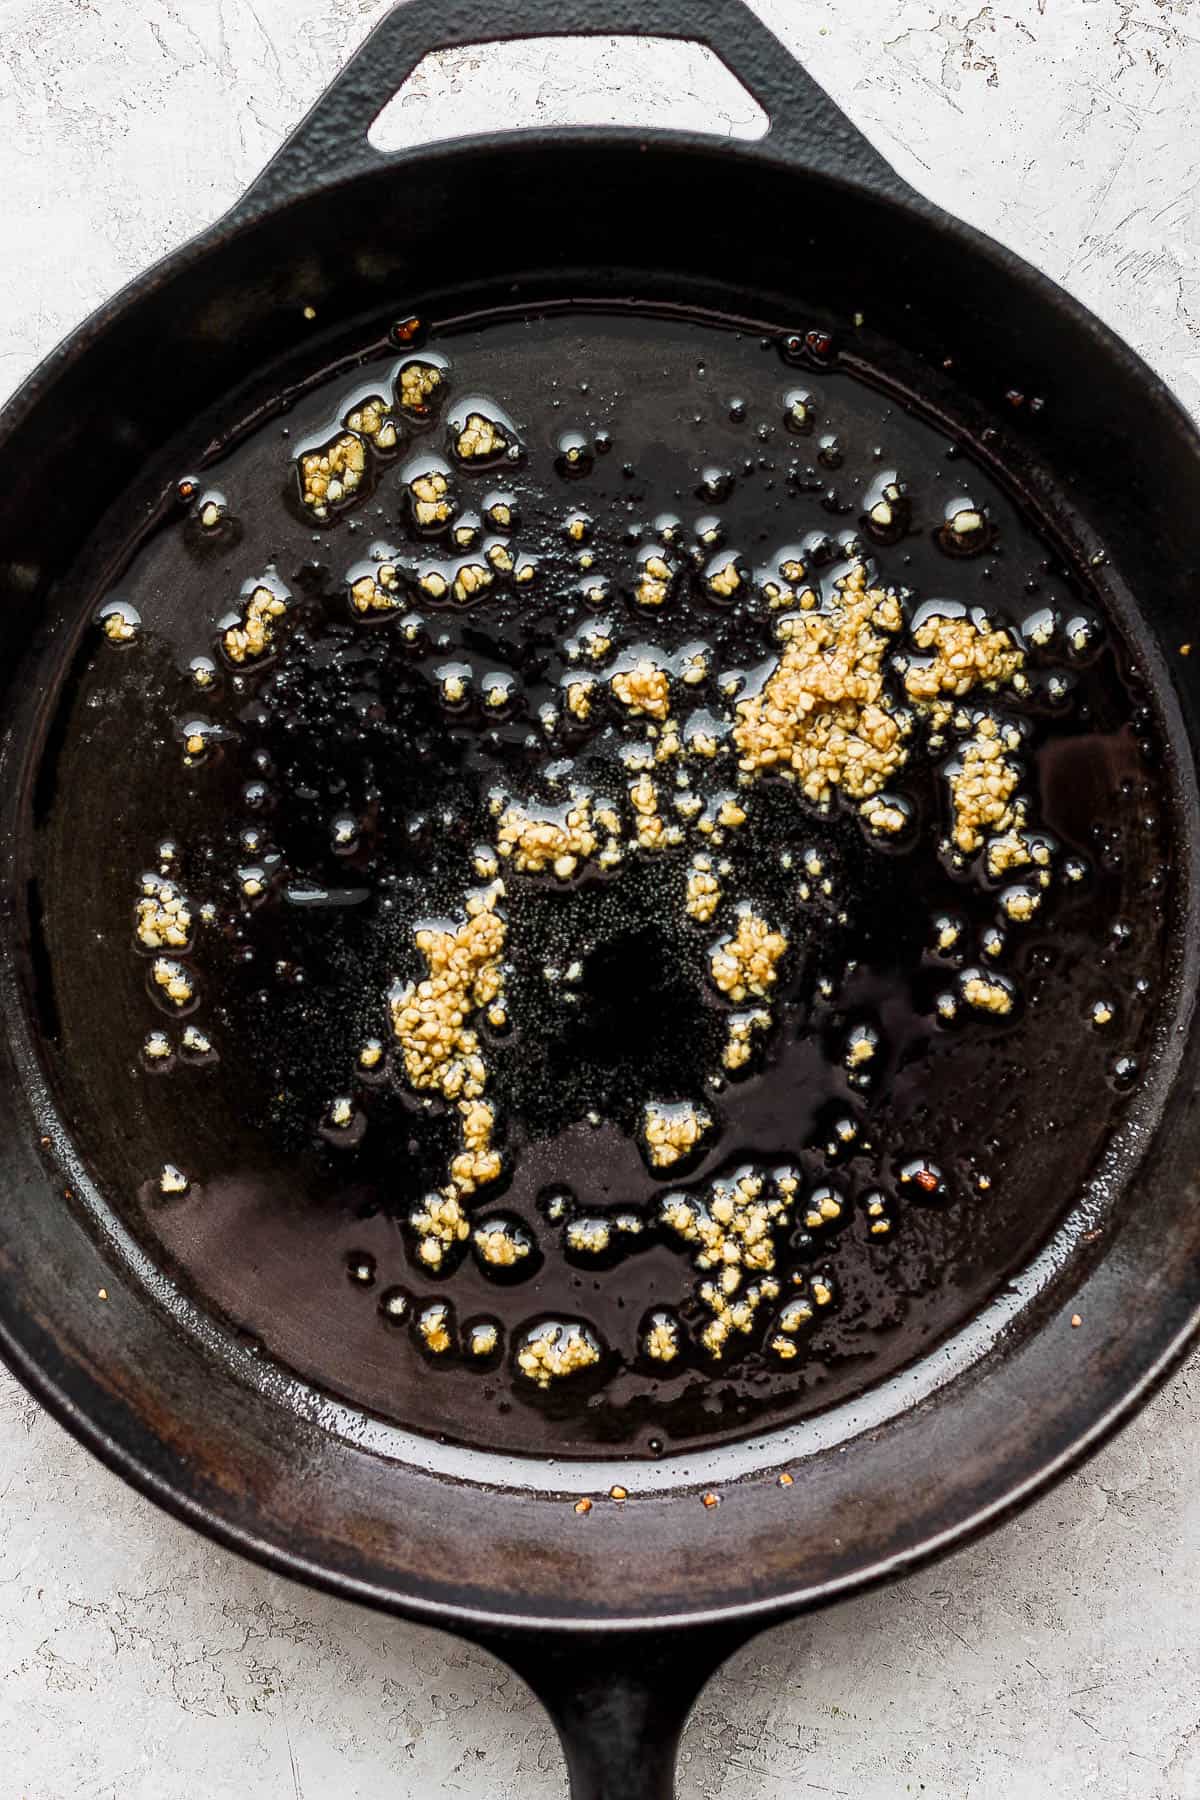 Garlic sautéing in olive oil on a skillet.